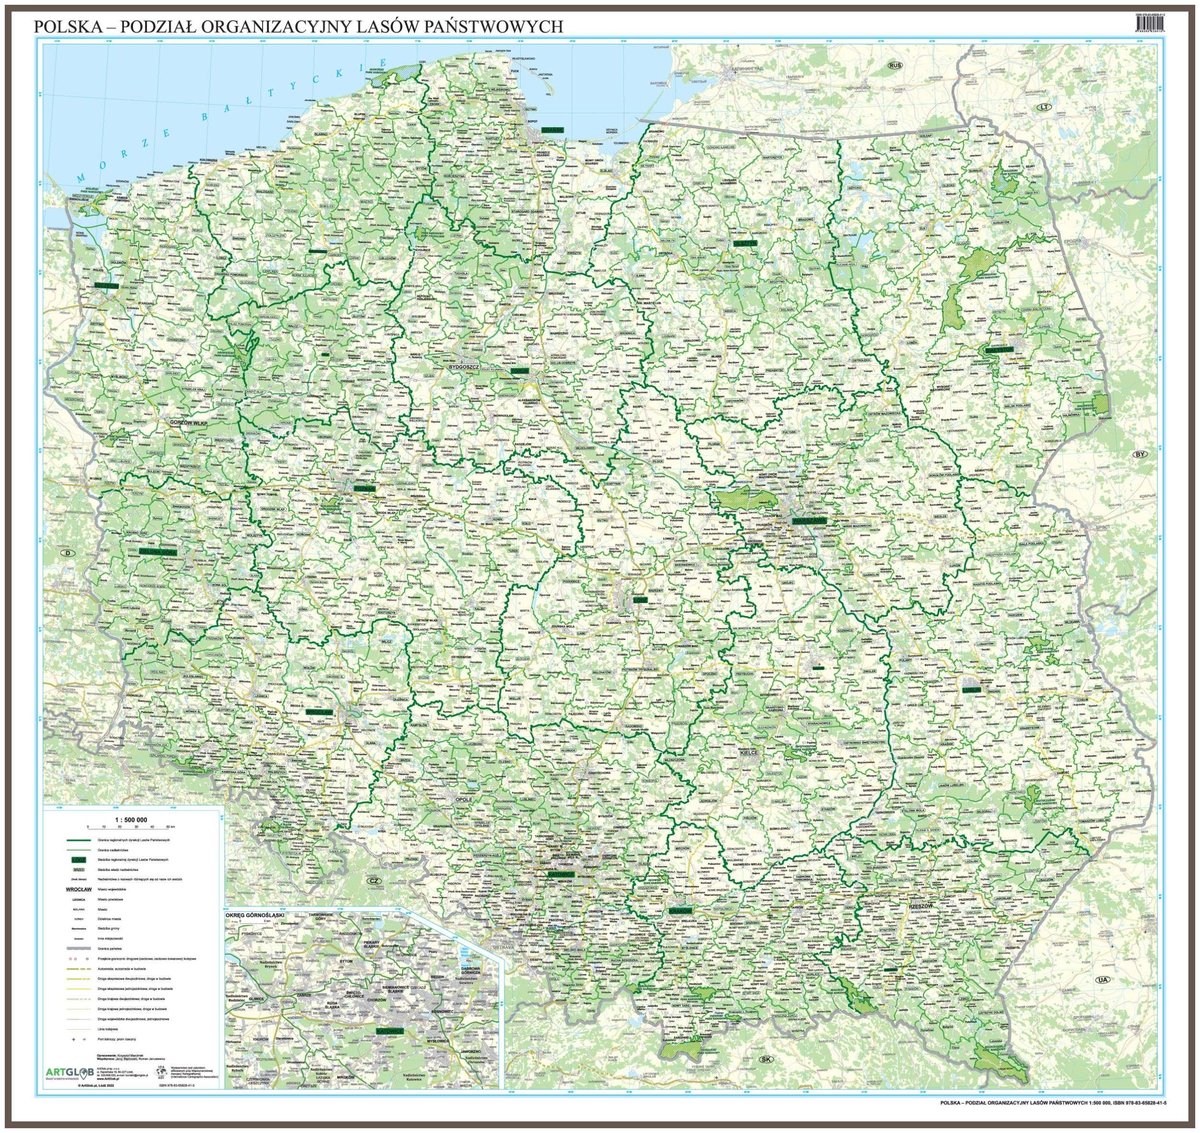 EkoGraf, Polska - podział organizacyjny Lasów Państwowych mapa ścienna na podkładzie do wpinania - pinboard, 1:500 000